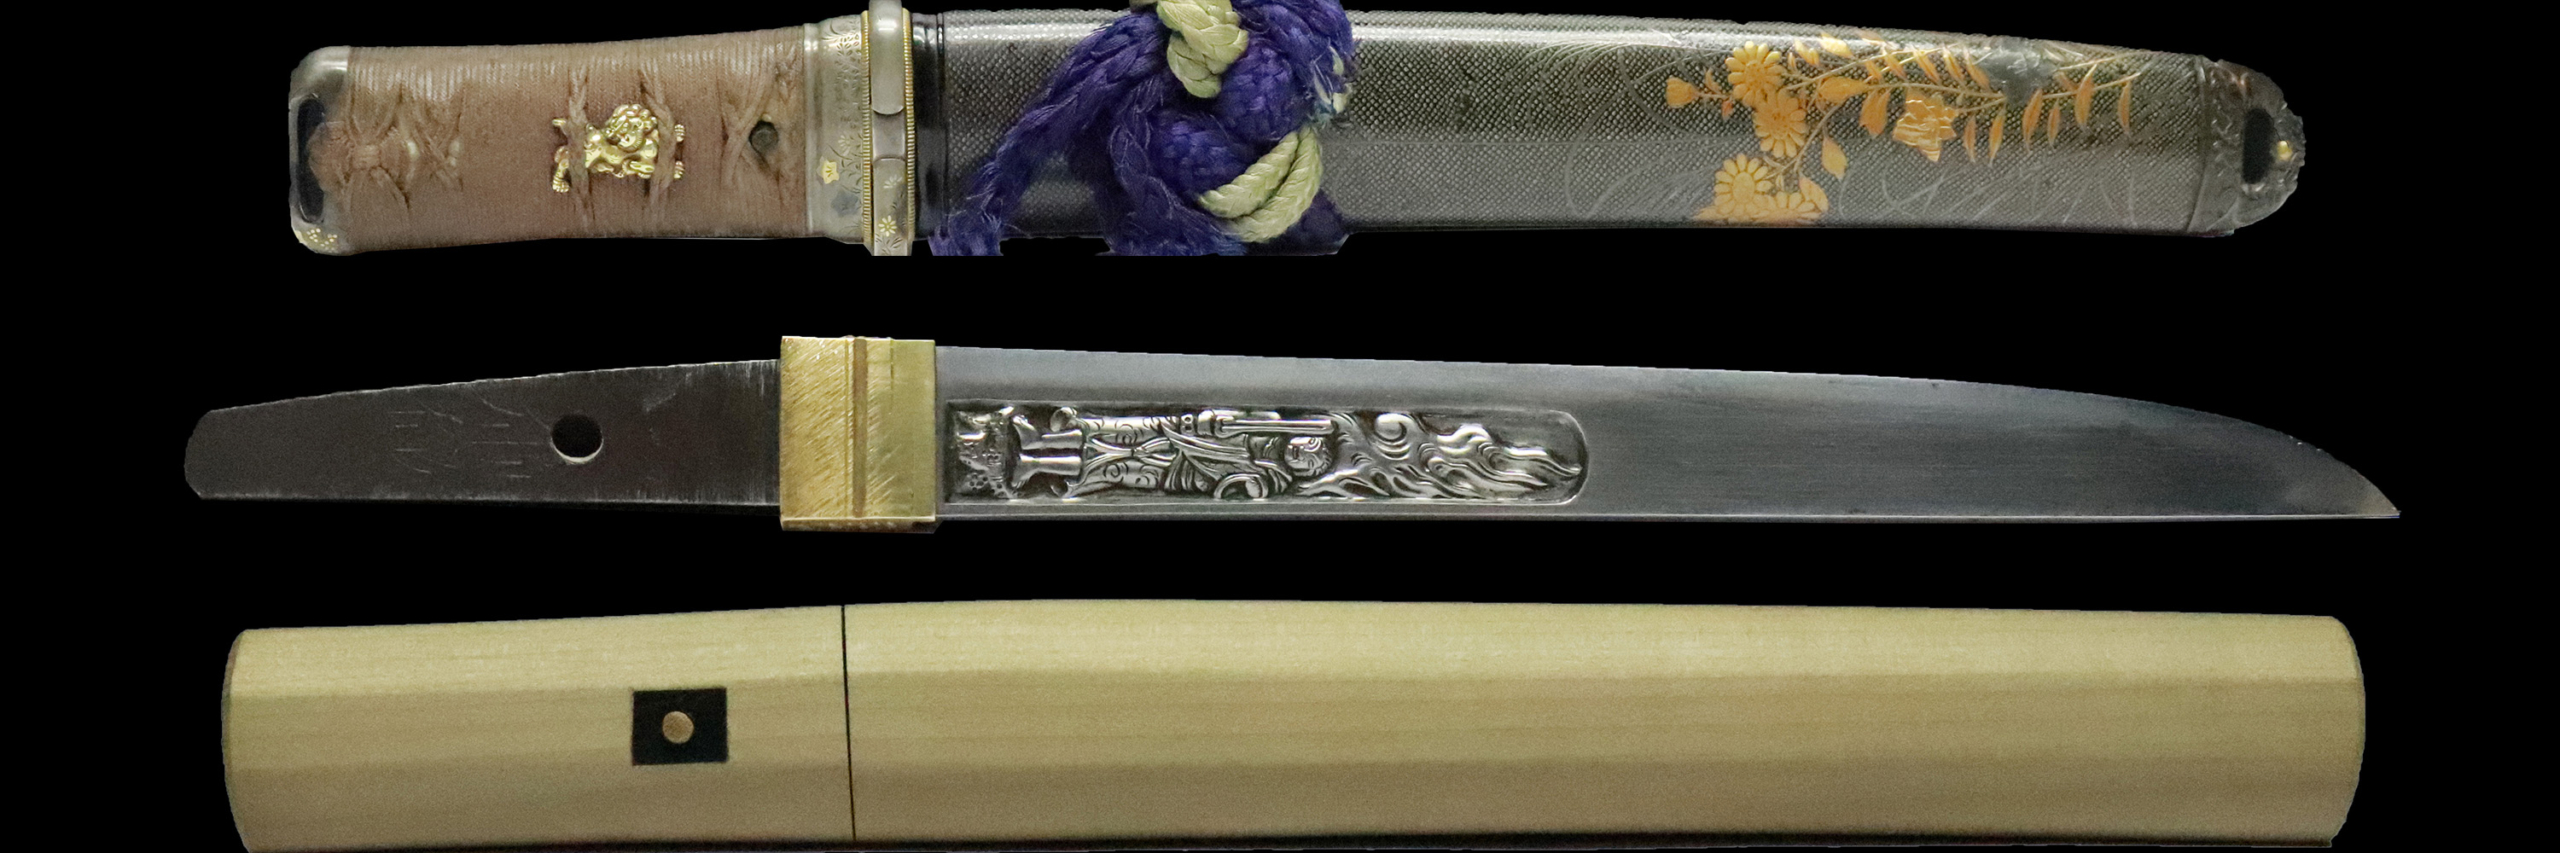 乕徹(白鞘・拵)短刀 | 日本刀販売の「勇進堂」 | 刀剣・美術刀剣・刀装具